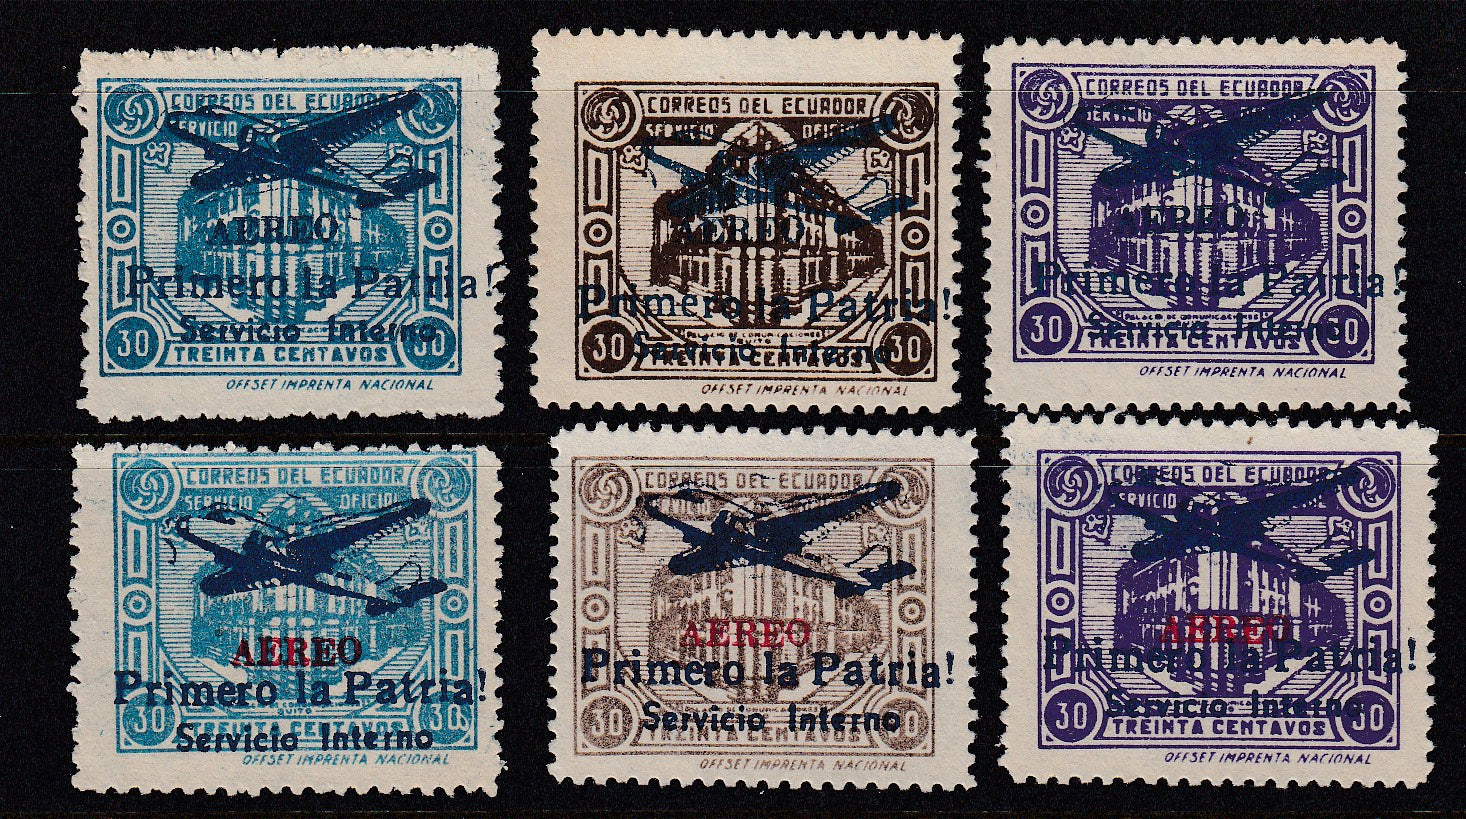 Ecuador 1947 Primero la Patria! Blue & Red Overprint Airmail Sets Mint. Sct O202-204 var